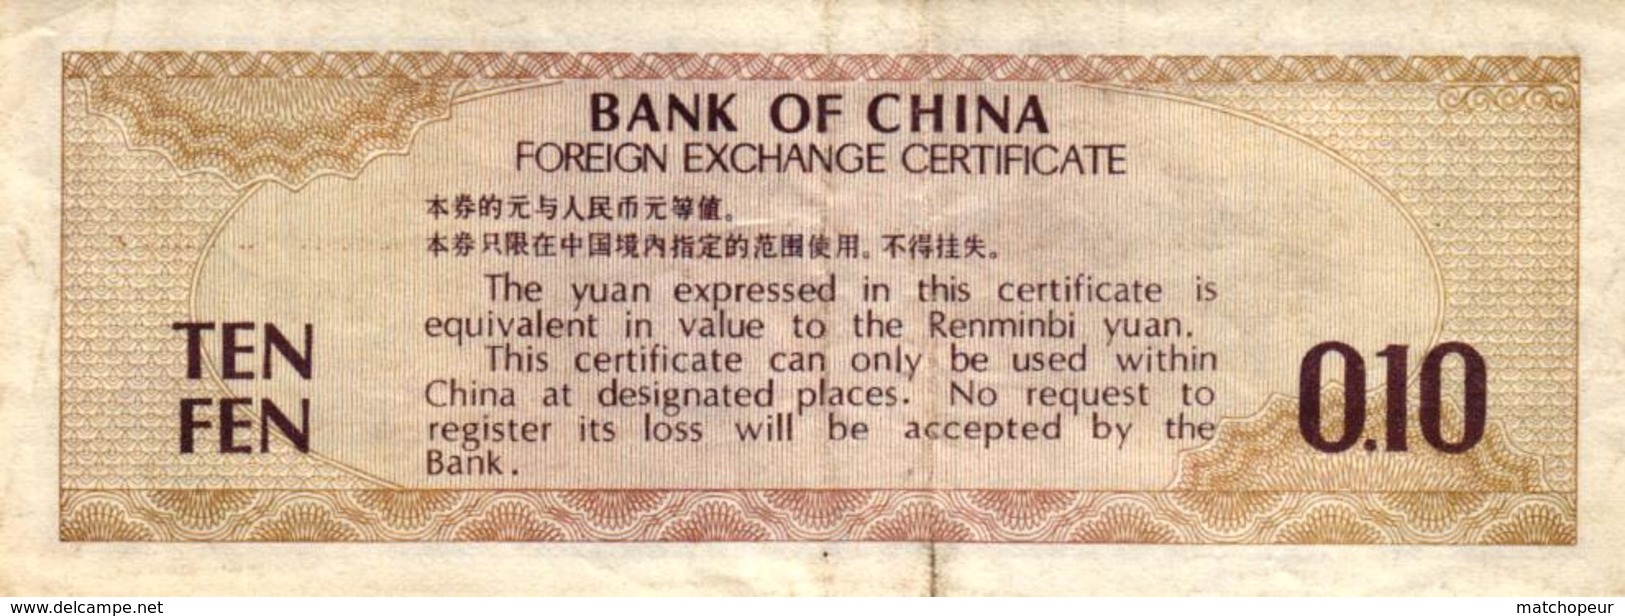 BILLET DE TEN FEN 0.10 BANK OF CHINA - Chine